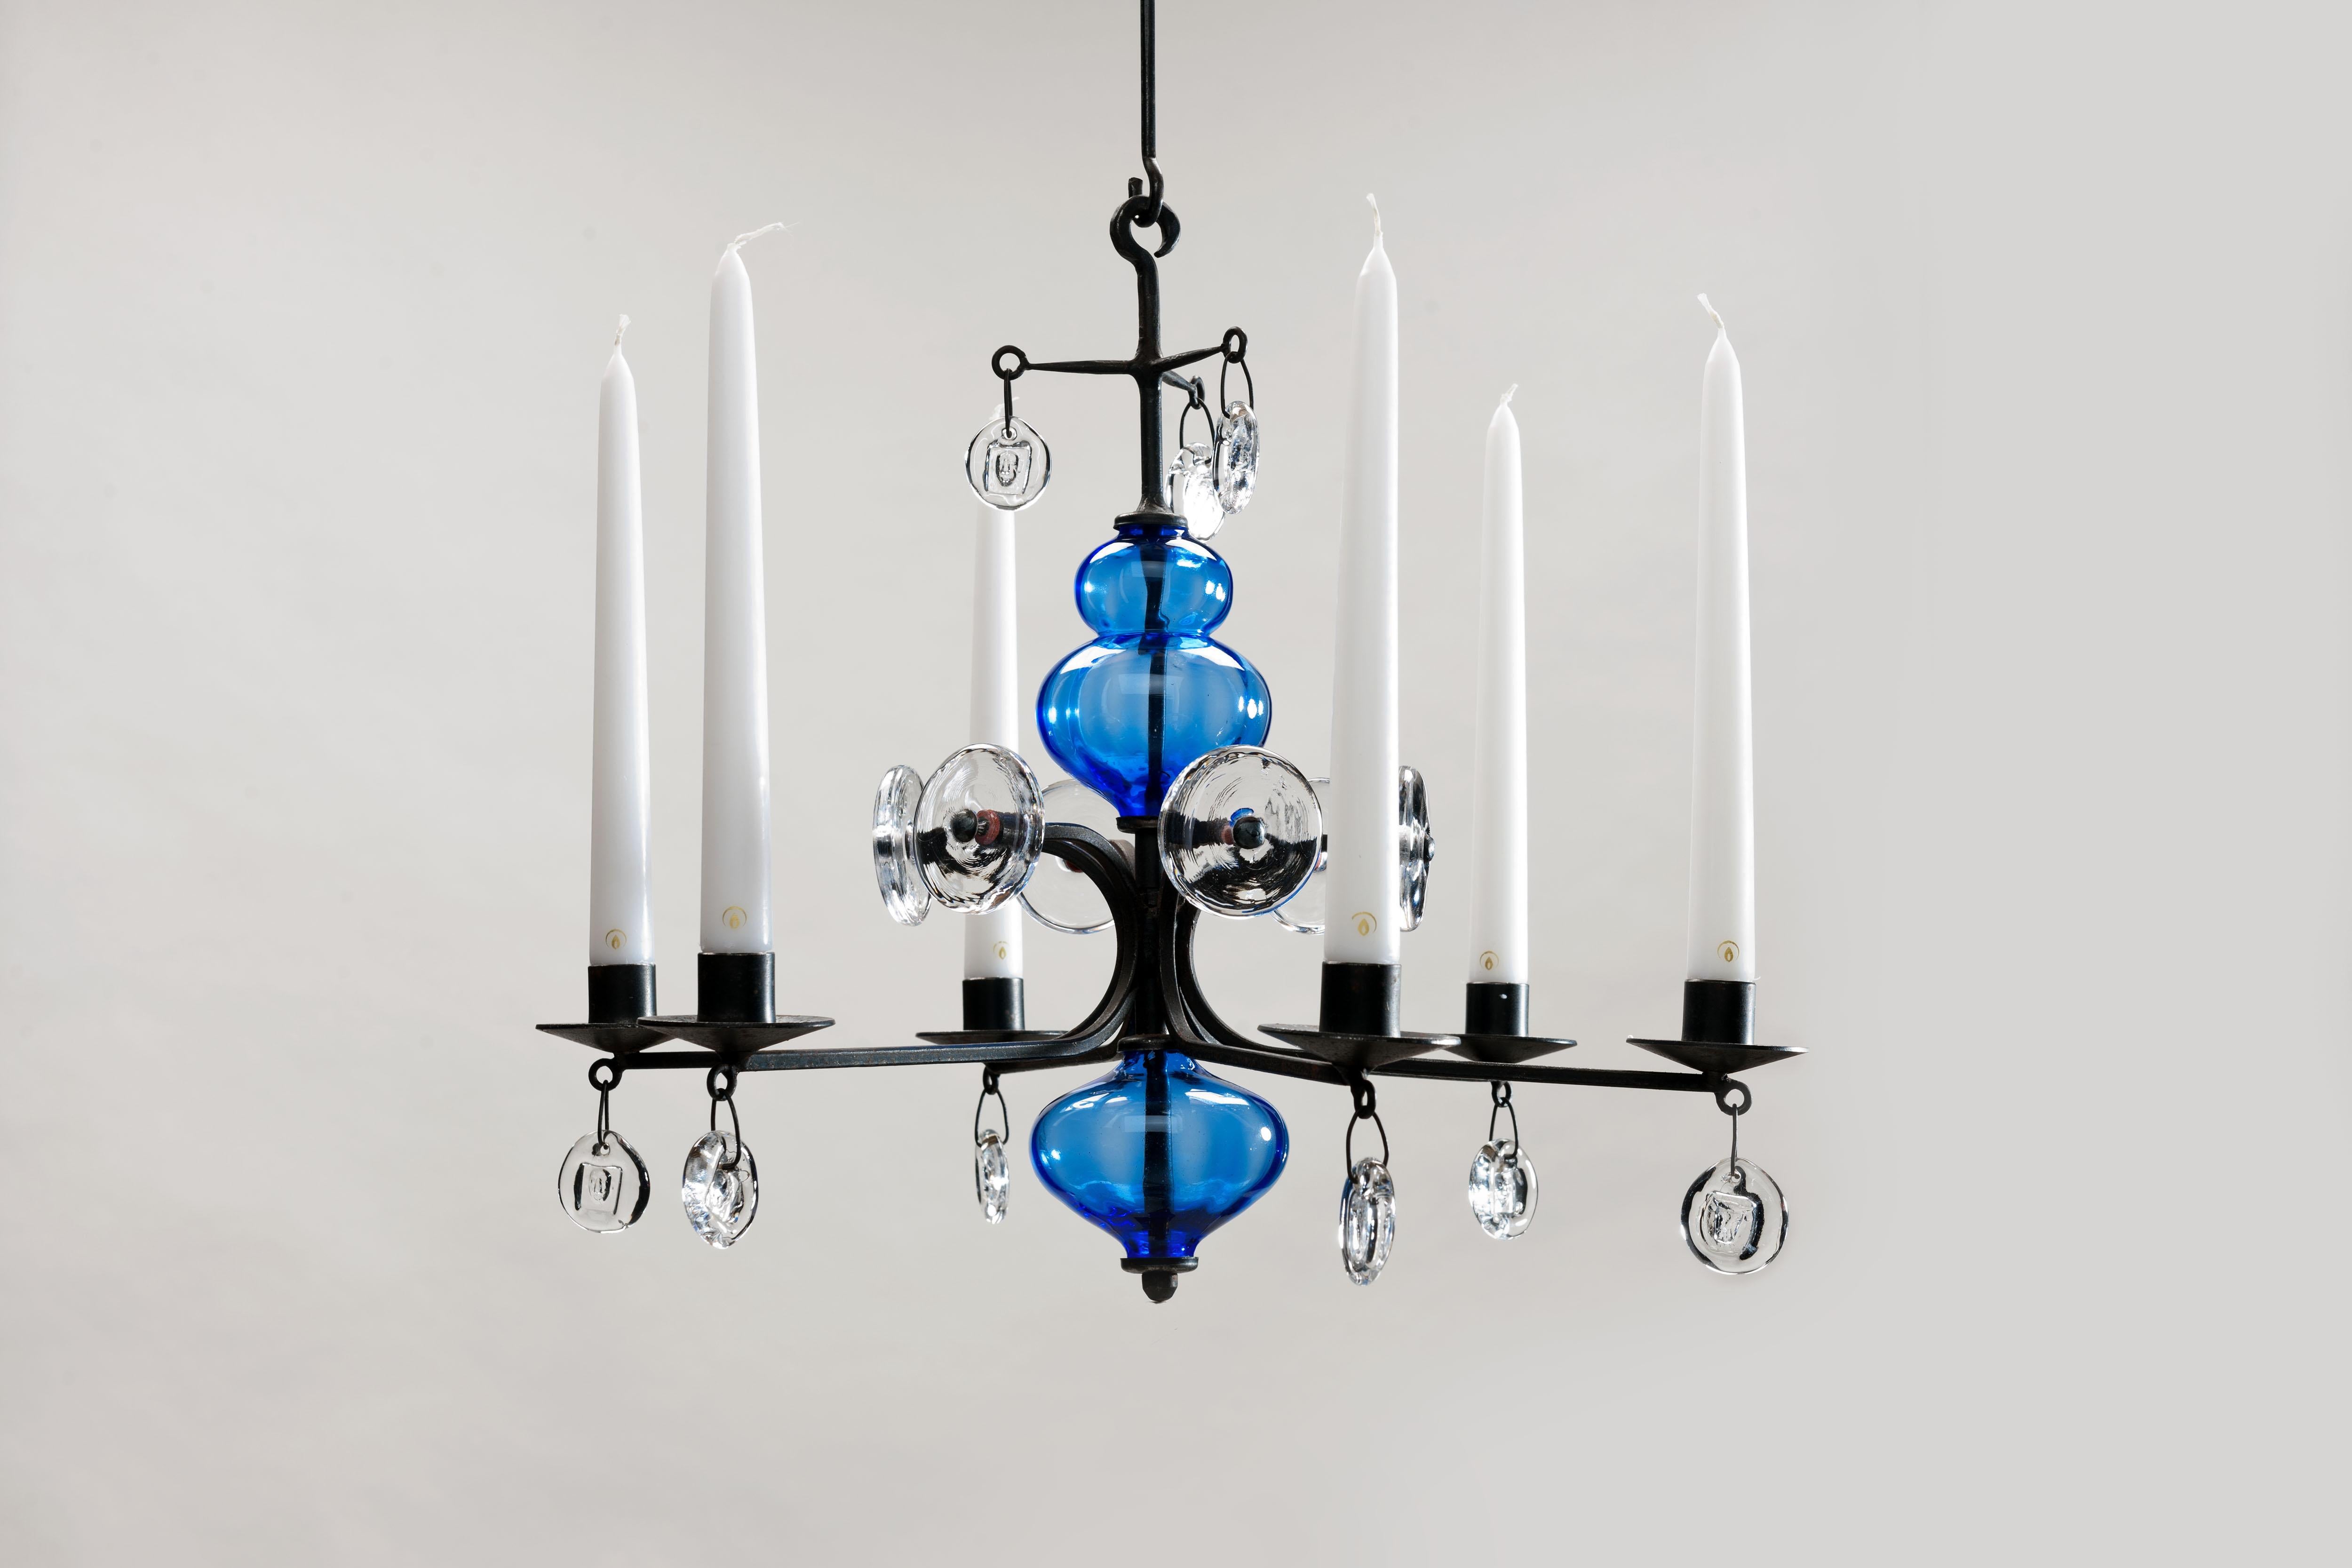 Kronleuchter für 6 Kerzen des schwedischen Designers Erik Hoglund aus geschwärztem Eisen mit blauen Glasornamenten und verschiedenen handgefertigten Glasscheiben mit eingeprägten Bildern von verschiedenen Gesichtern. 
Der Kronleuchter wird mit zwei